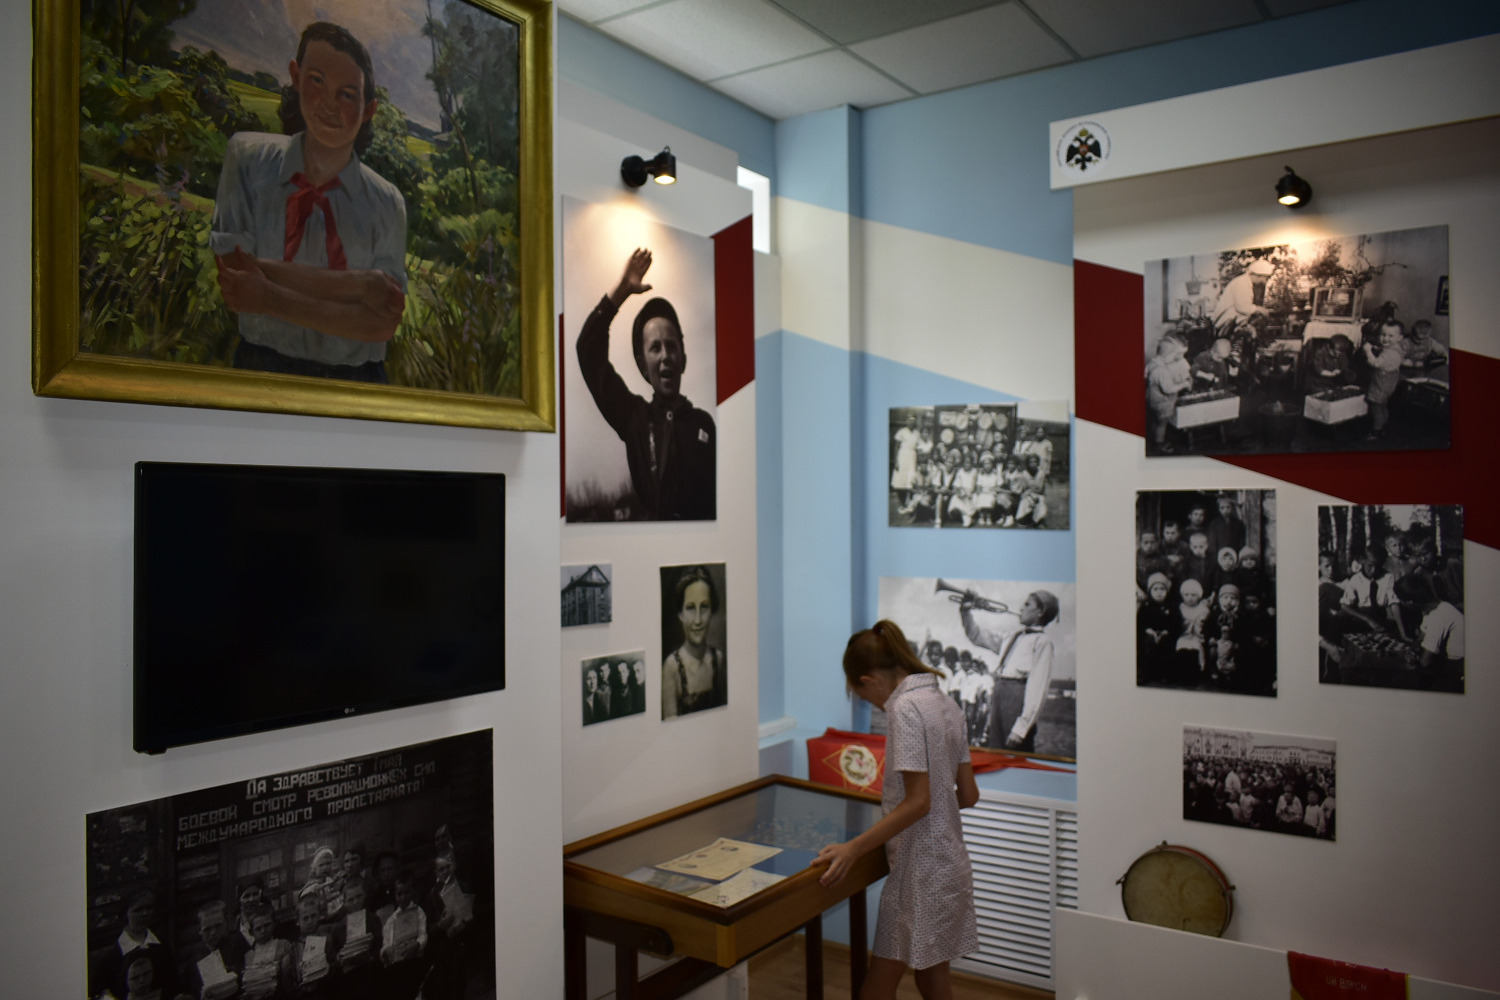 С помощью мультимедийной техники посетители музея могут копии редких архивных документов, посмотреть видеолматериалы и героях-земляках